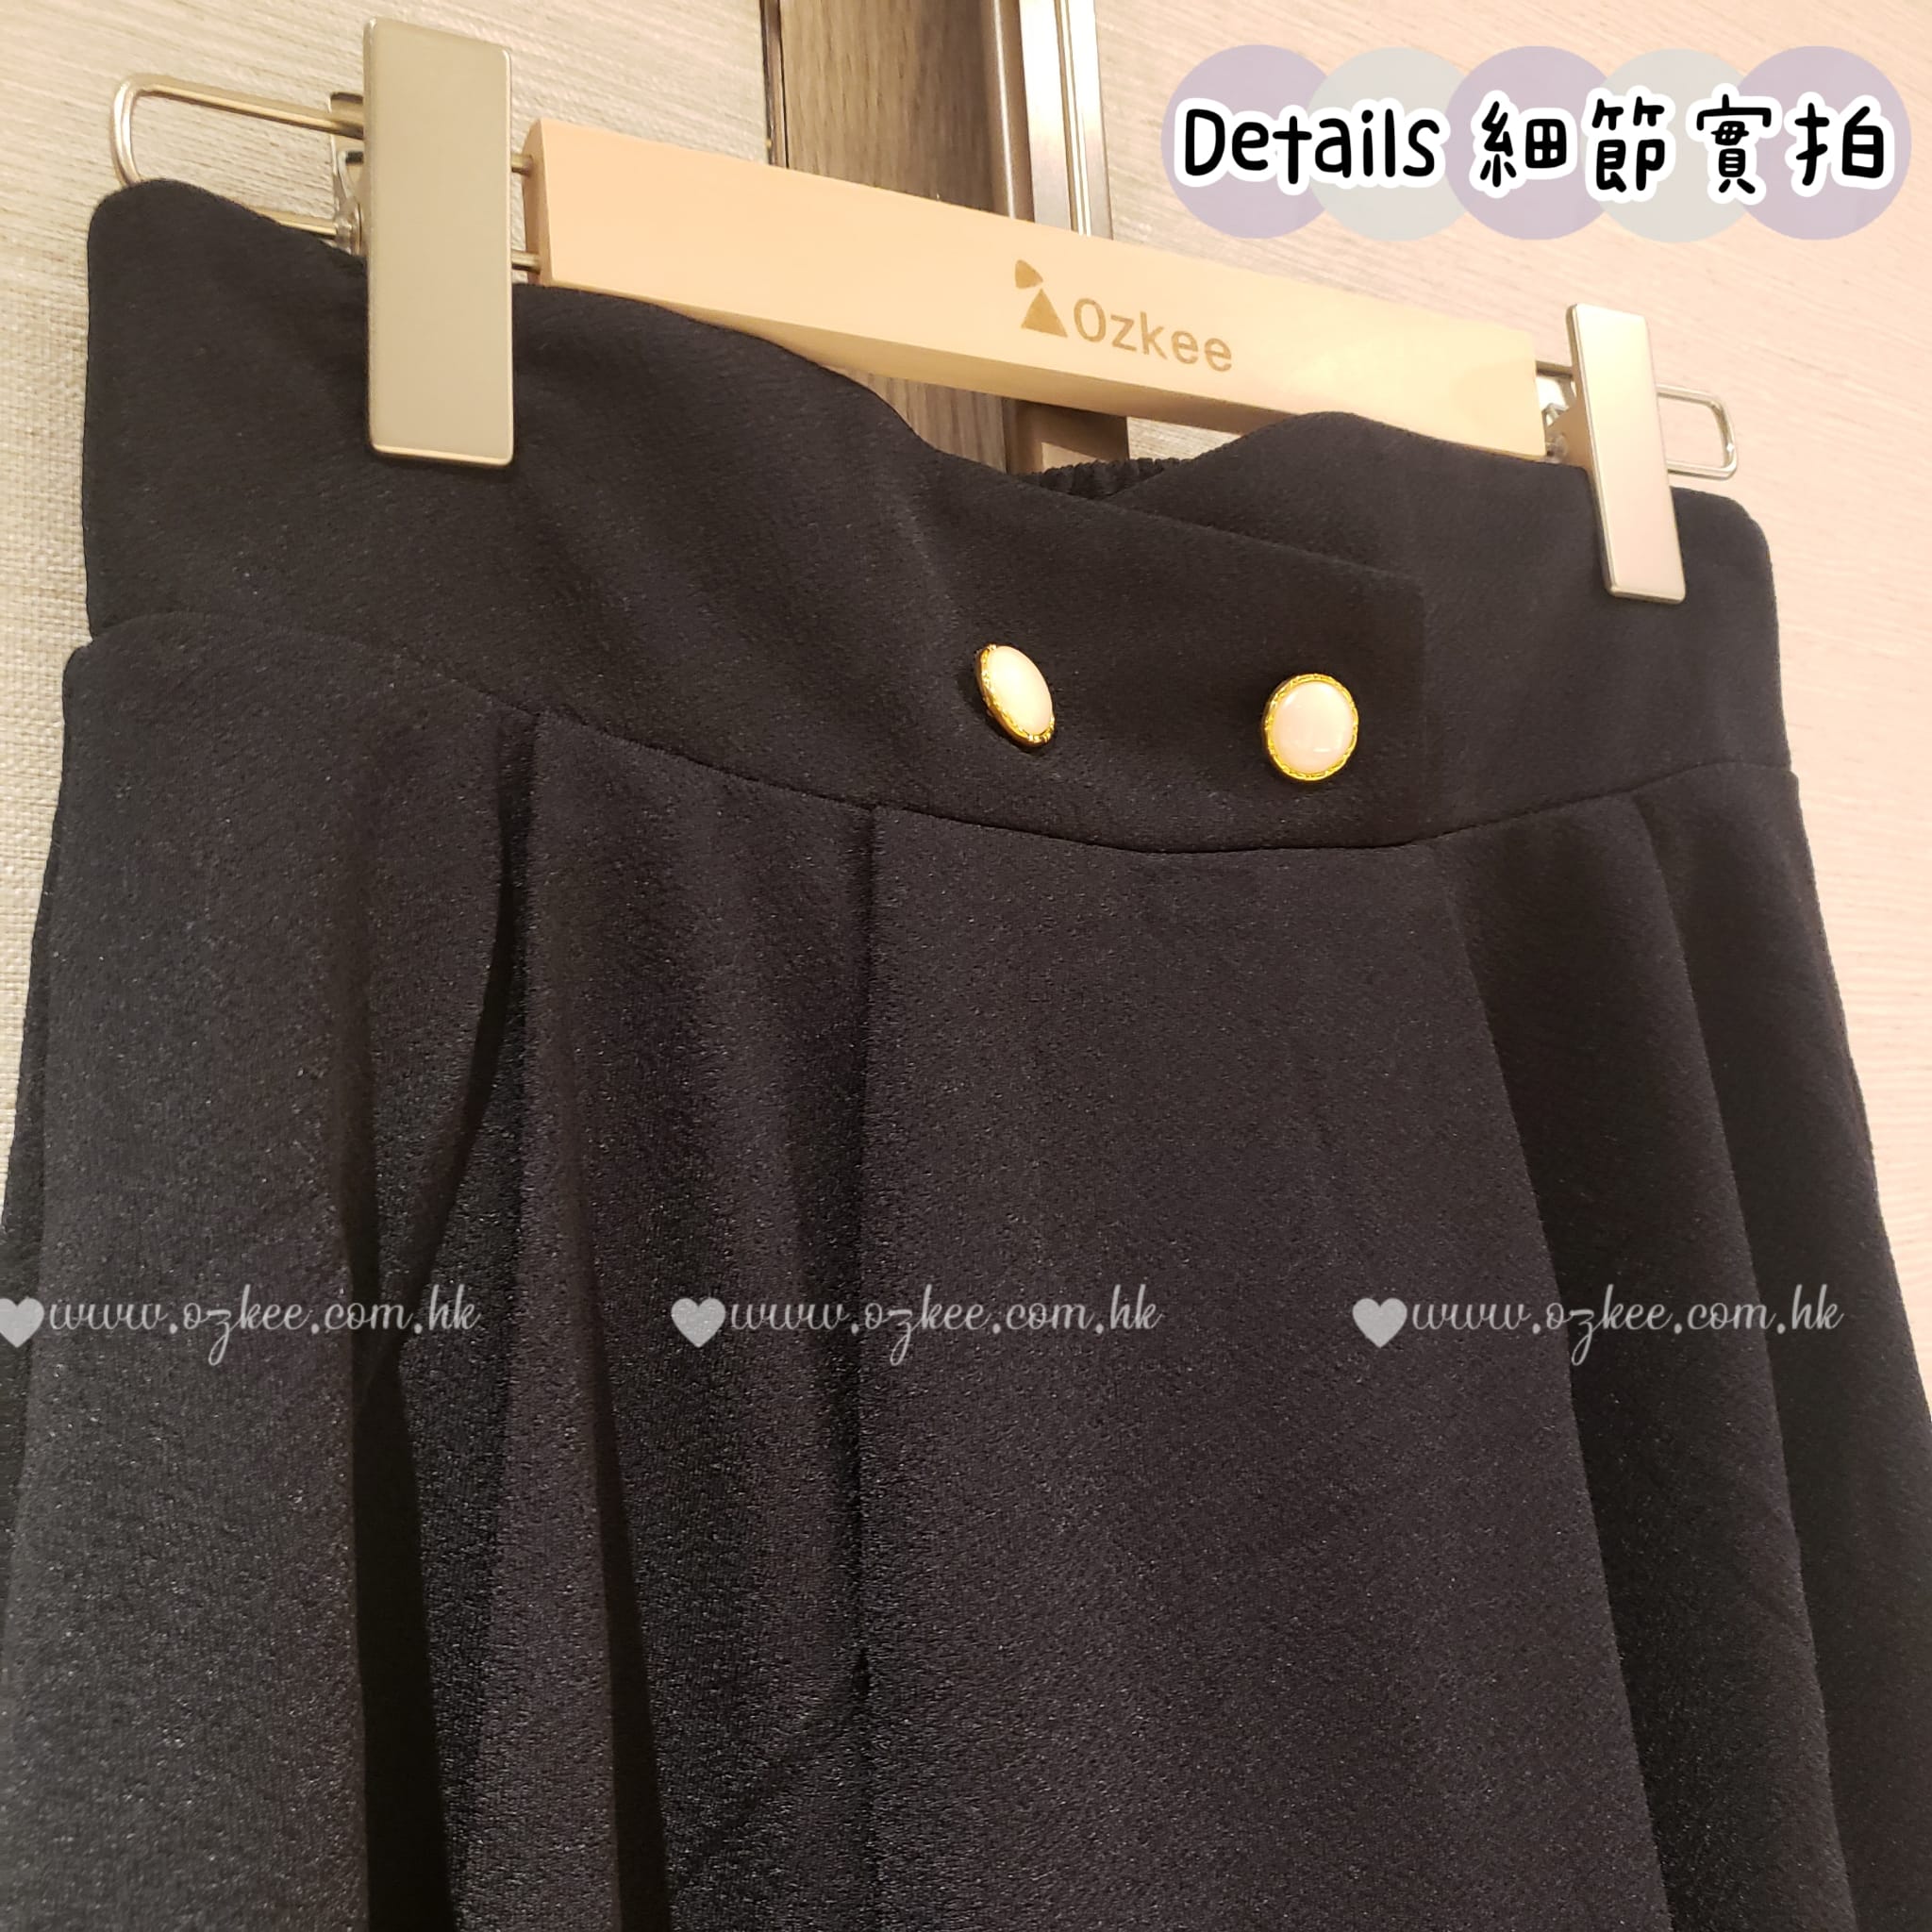 👑期間限定👑韓國熱賣新款女裝純色復古學院風中短裙傘裙 - C1062